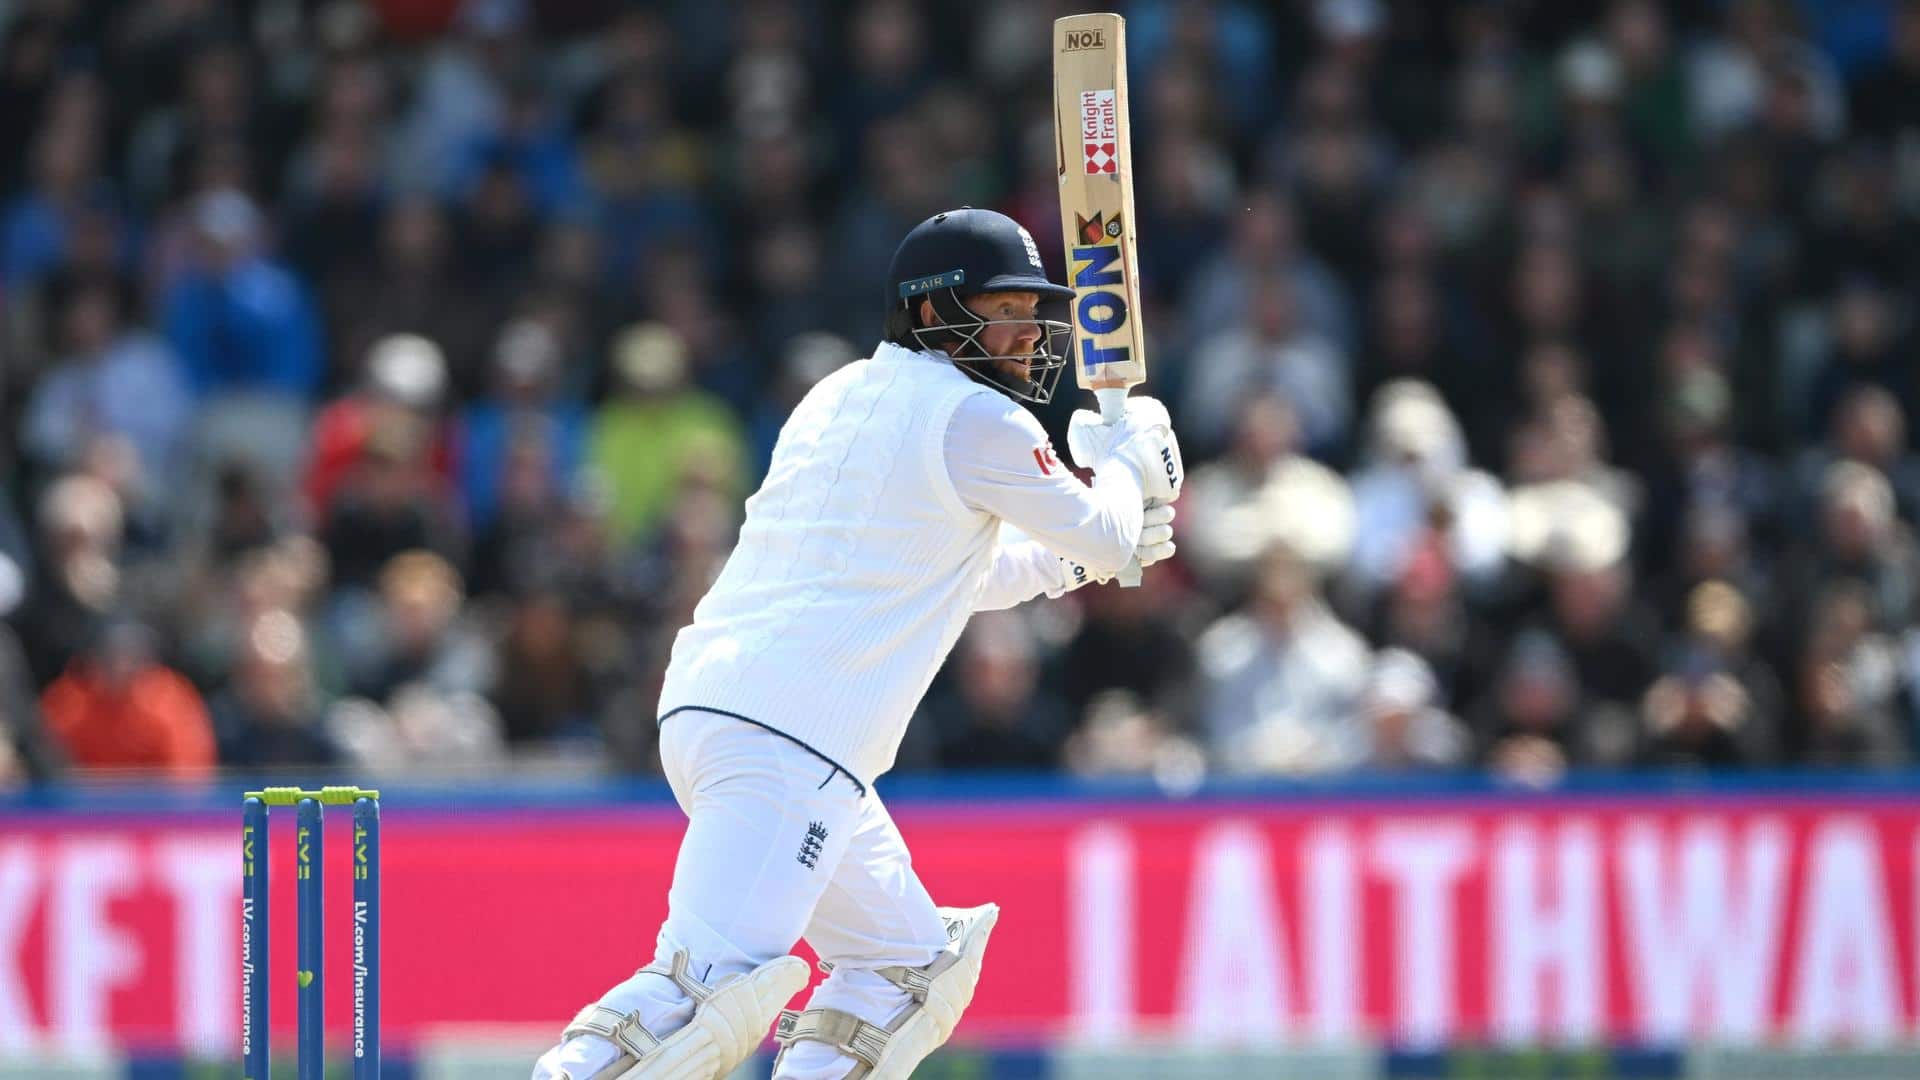 4th Ashes Test, Jonny Bairstow slams an unbeaten 99: Stats